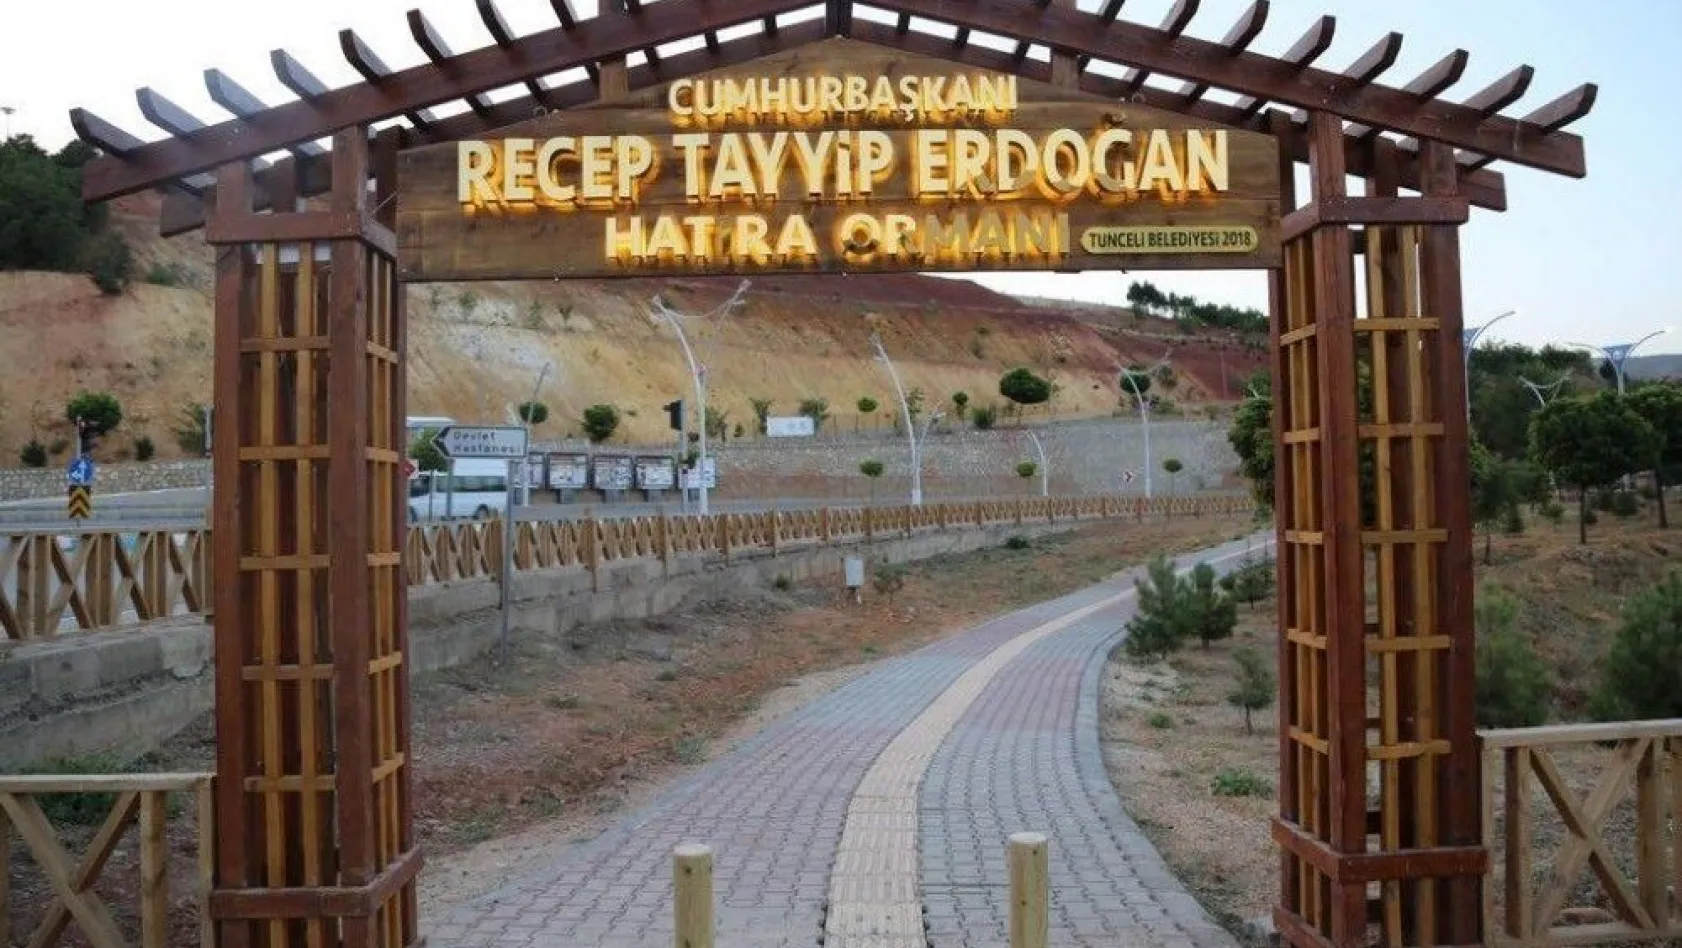 Tunceli'de Cumhurbaşkanı Erdoğan Hatıra Ormanı yenilendi
